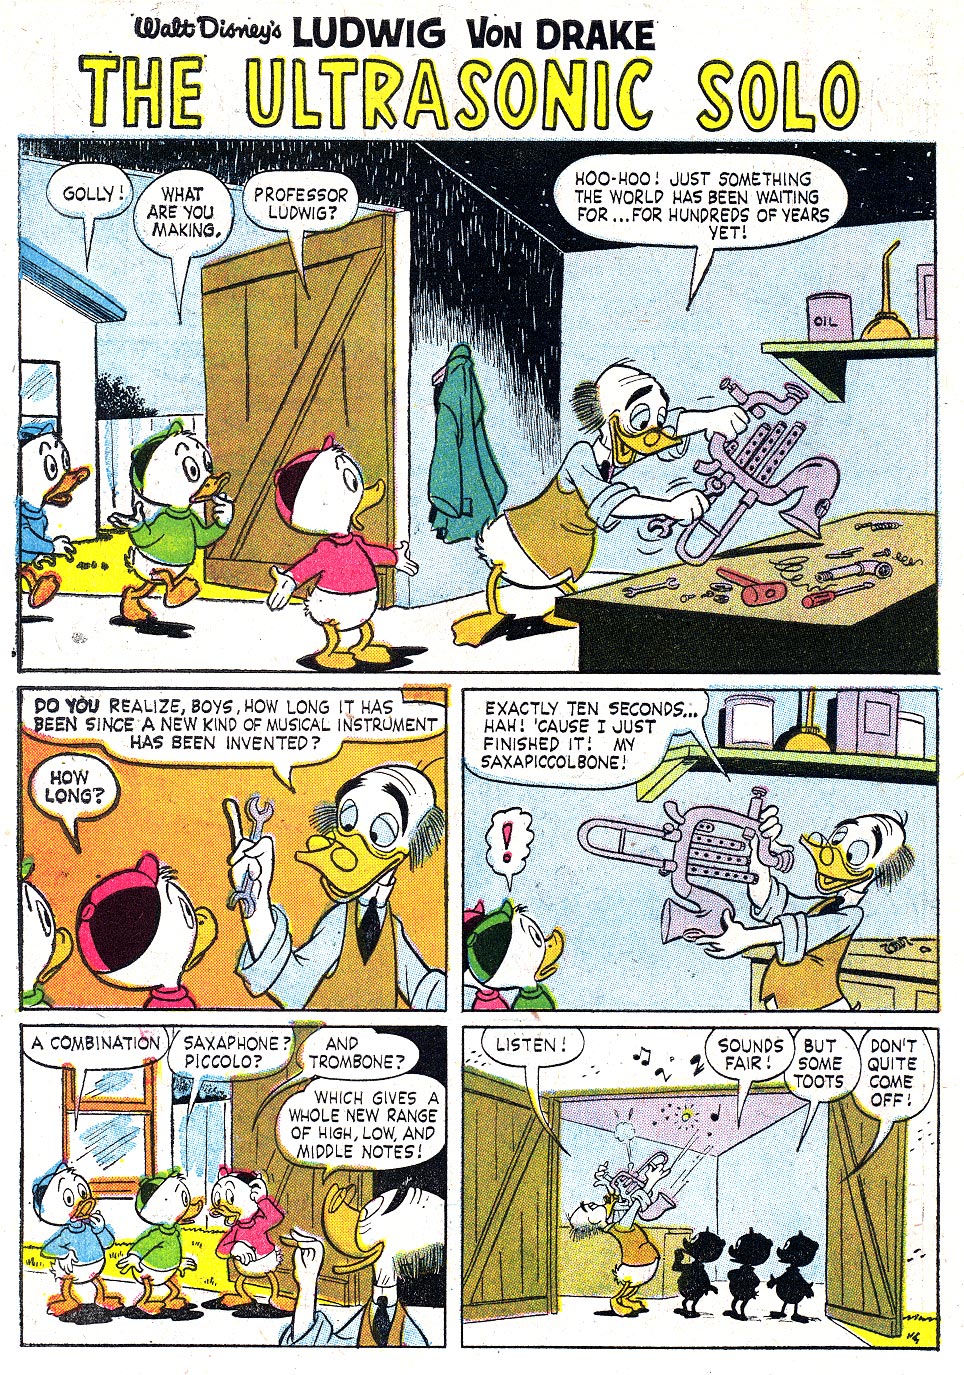 Read online Walt Disney's Ludwig Von Drake comic -  Issue #2 - 30